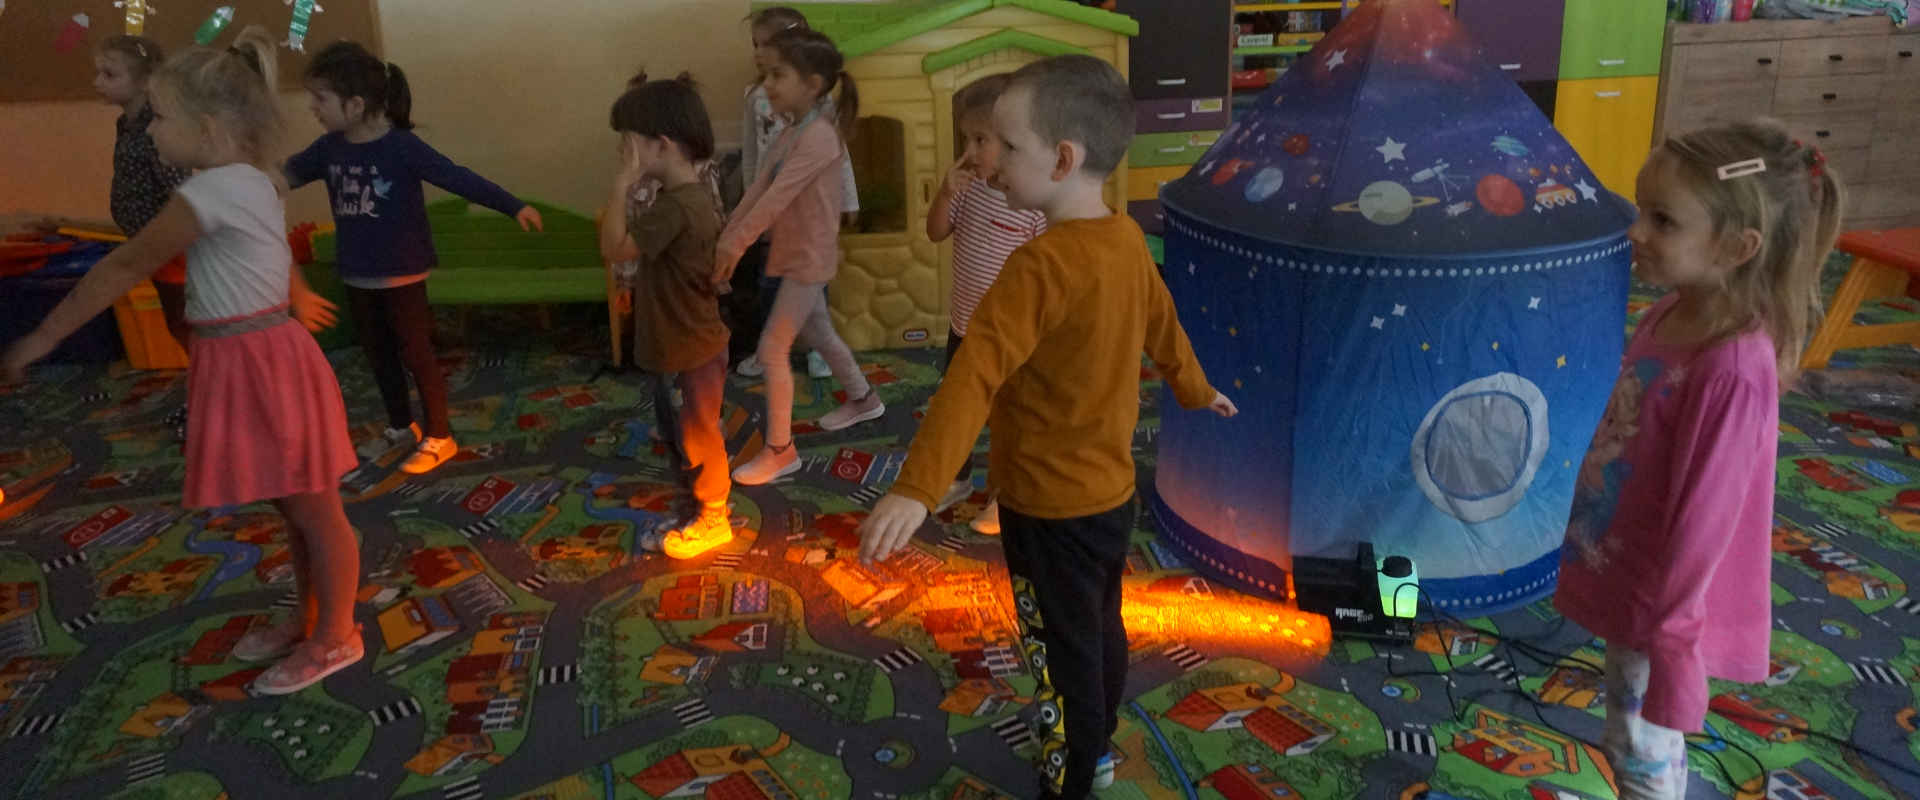 Dzieci bawią się przy makiecie rakiety